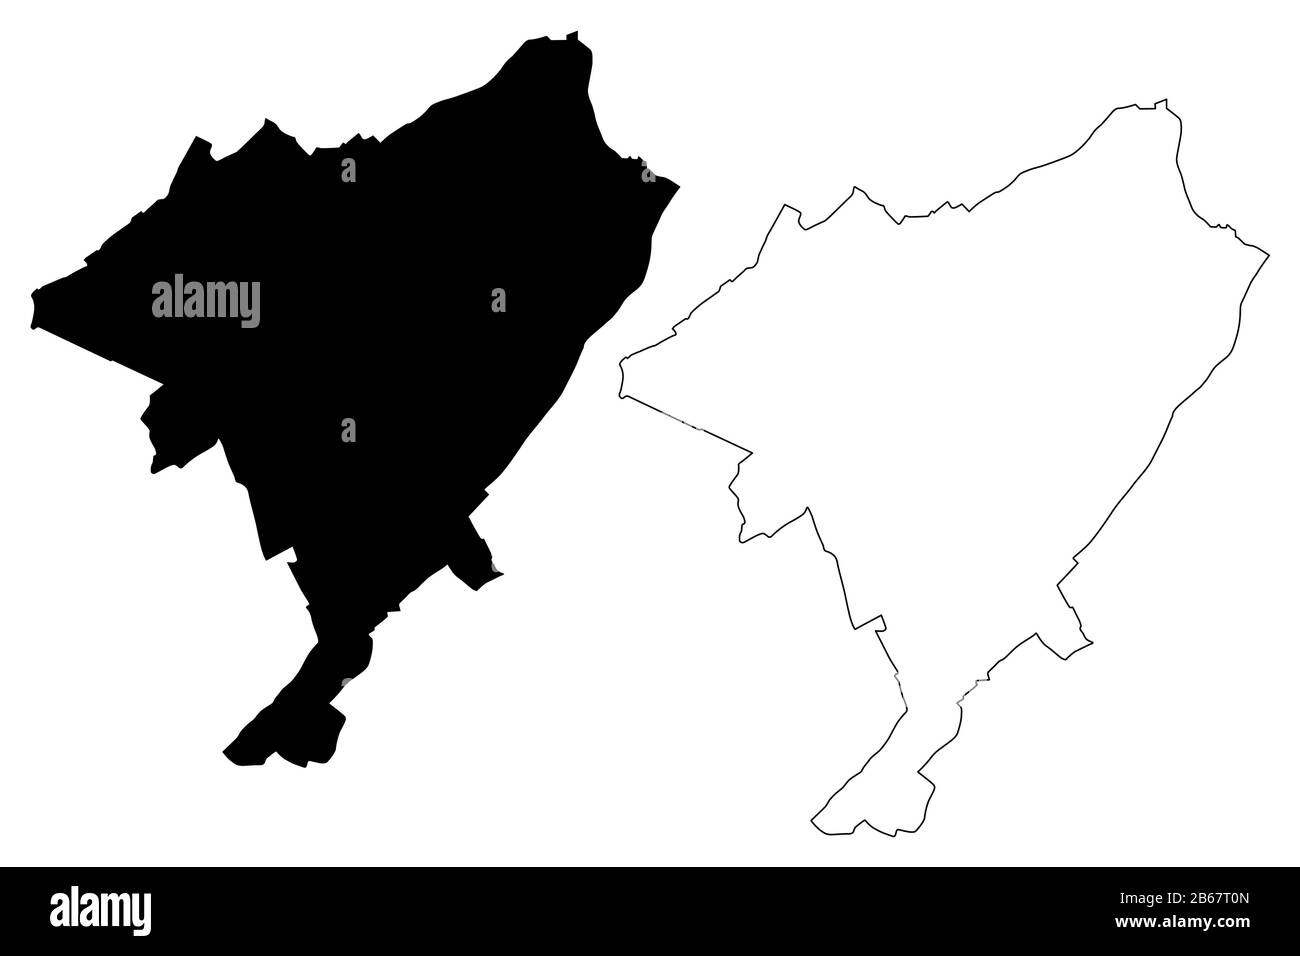 Ville de Tourcoing (République française, France) illustration vectorielle de carte, esquisse de gribble carte de la ville de Tourcoing Illustration de Vecteur